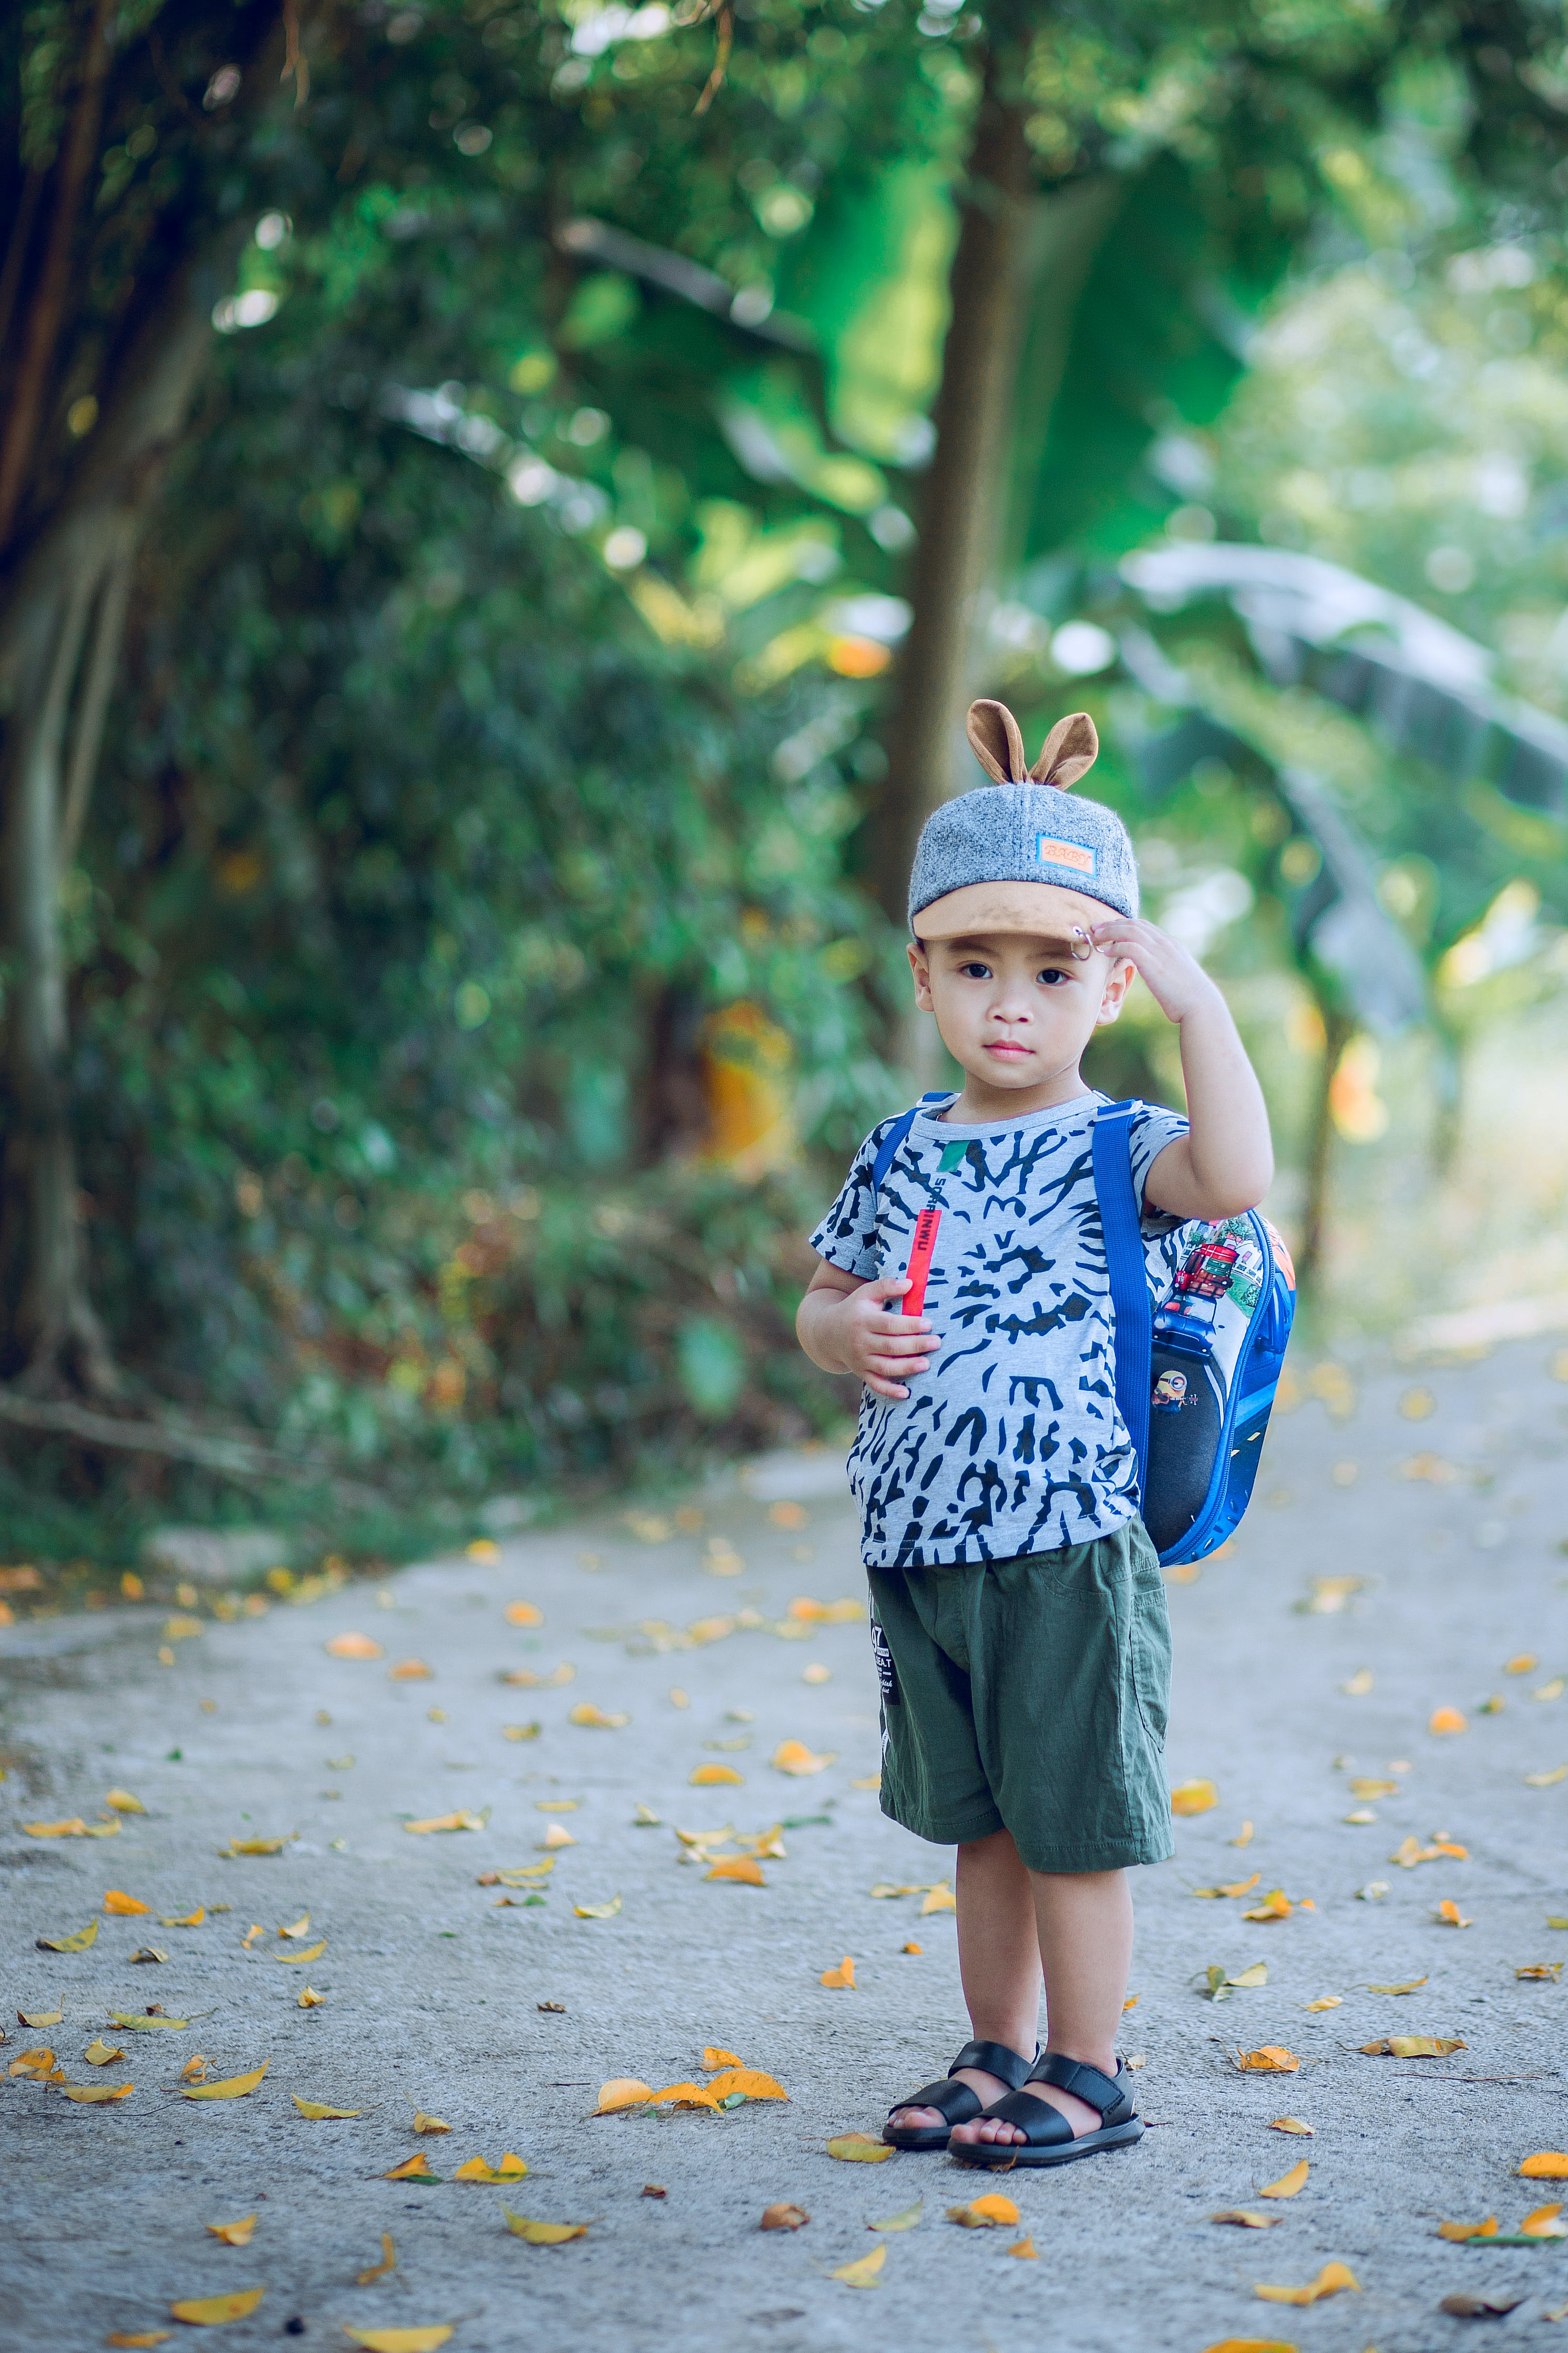 Un niño con una camiseta decorada. | Fuente: Pexels